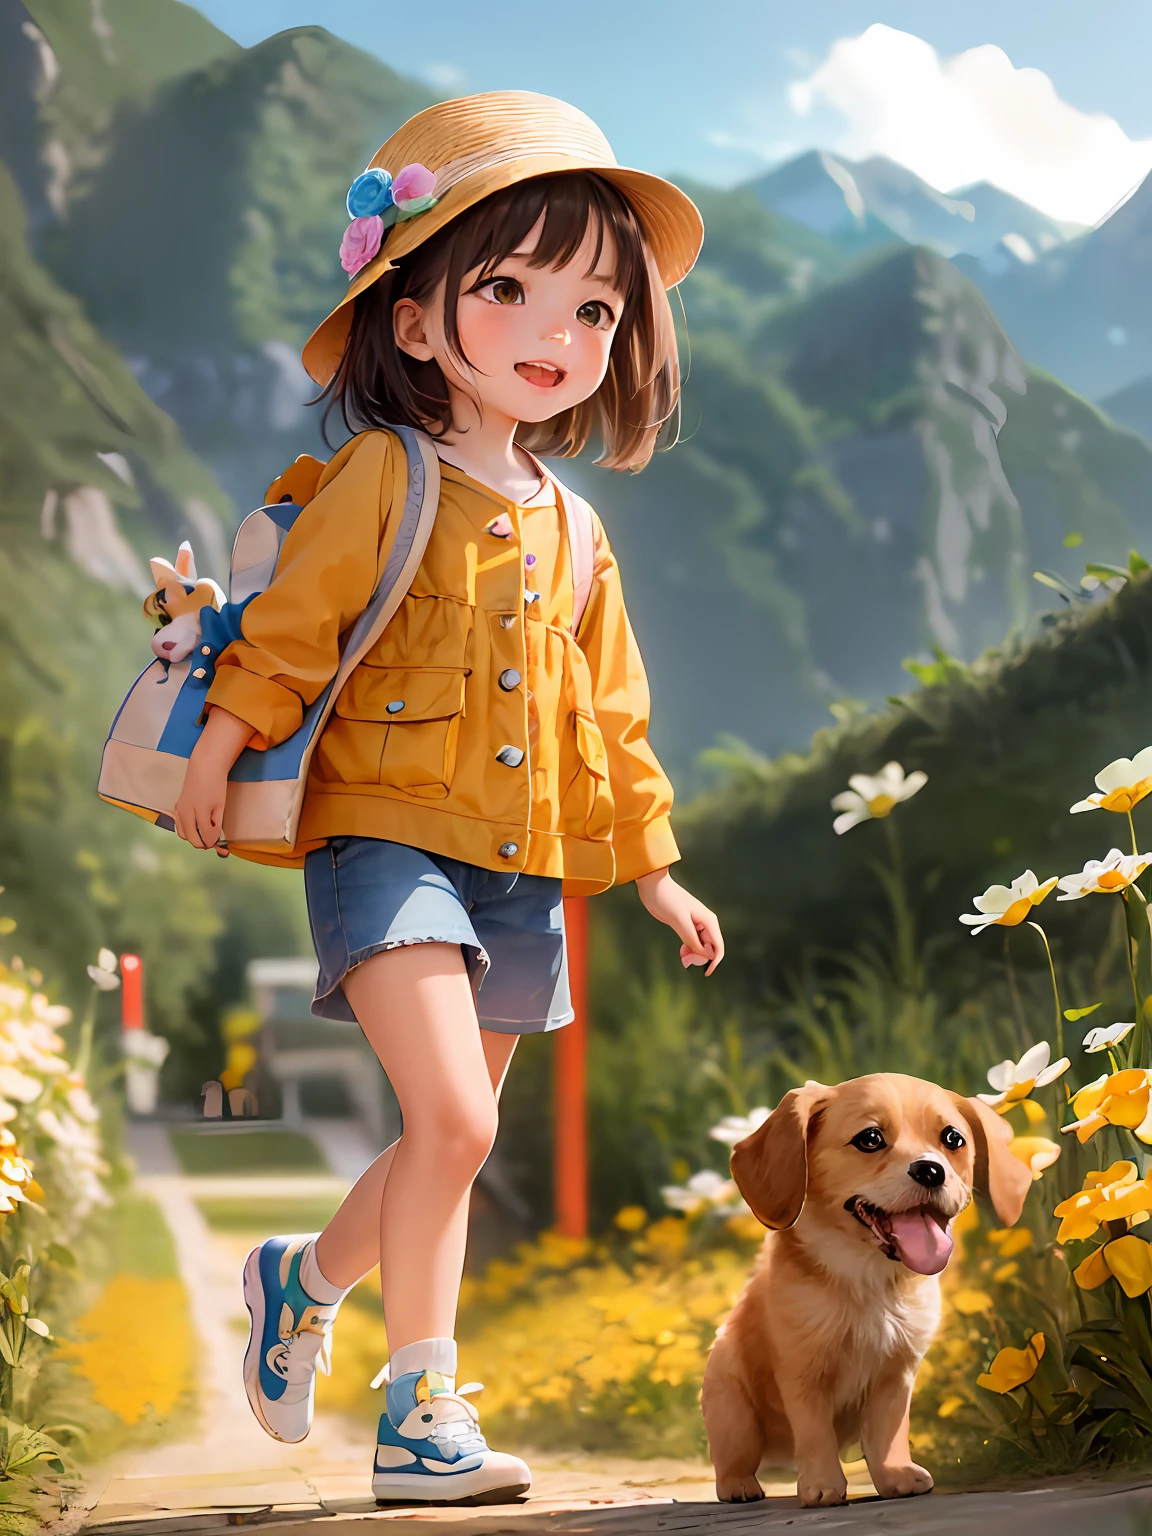 com estilo Cartoon，características faciais detalhadas， Ilustração de resolução HD 4K。Uma fofa com uma bolsa e seu cachorrinho，Rodeado por lindas flores amarelas e natureza, Aproveite a beleza da primavera。